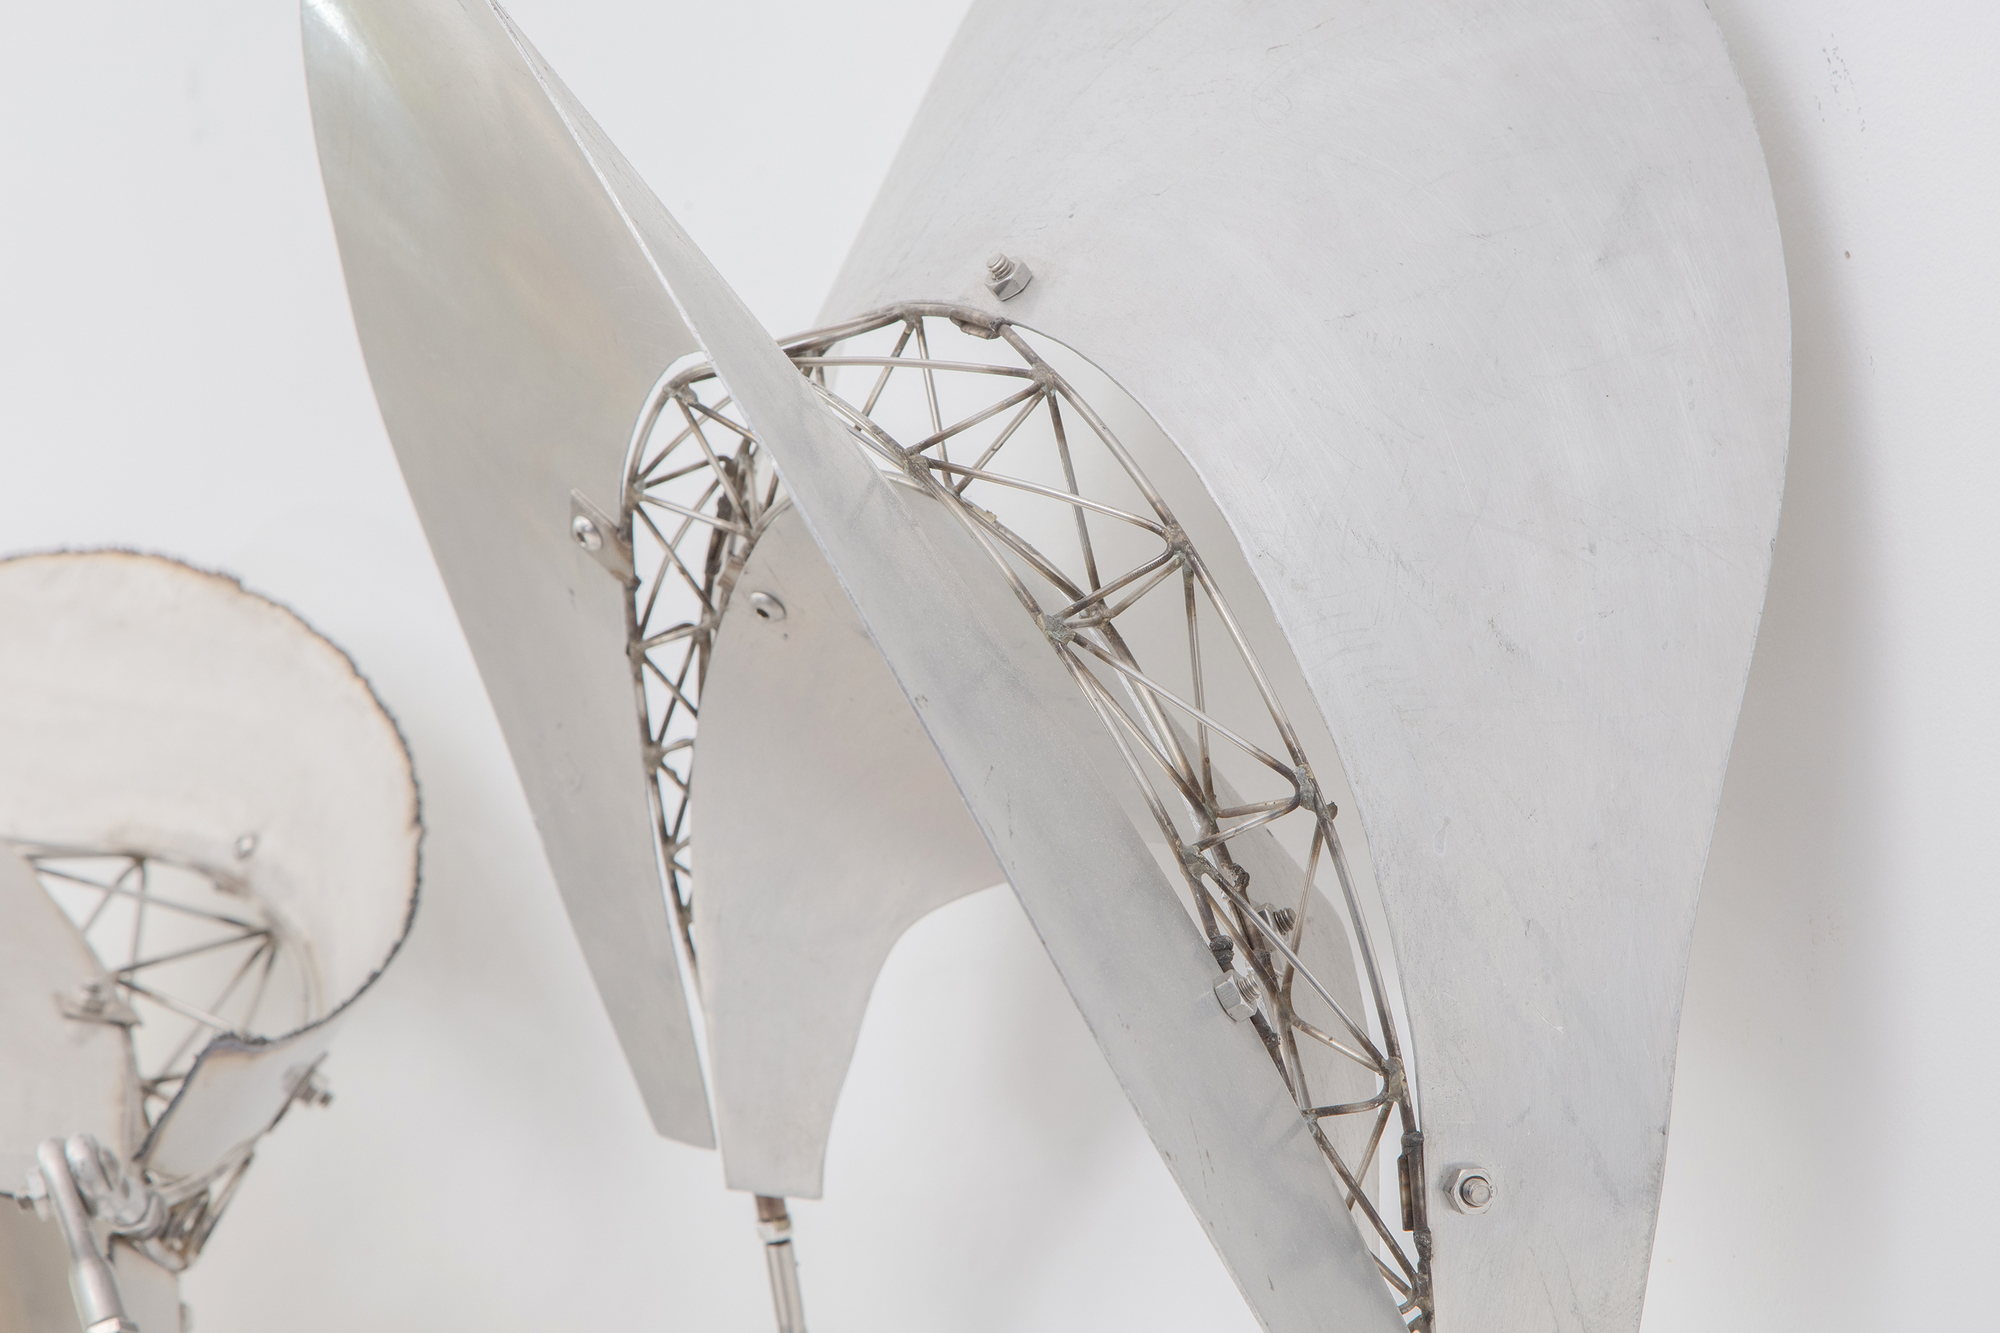 La série de sculptures Bali de Frank Stella se caractérise par des formes flottantes et fluides, s’étendant dans l’espace du spectateur et invitant à l’interaction entre l’objet et son environnement. Le « dadap », un type d’arbre associé à la croissance et à la signification rituelle dans la culture balinaise, reflète la nature organique et dynamique des sculptures de Stella. En passant de l’acier inoxydable et de l’aluminium au bambou, Stella a préservé la nature essentielle de l’esthétique balinaise qui exalte des formes organiques, fluides et dynamiques dans leur espace. Dadap présente une continuité dans l’exploration thématique de Stella où l’esprit de son travail transcende la matérialité. Le métal offre une texture, une réflectivité et une interaction différentes avec la lumière et l’espace, tout en adhérant aux principes du mouvement et de l’interactivité. Il s’agit d’un transfert créatif de forme et de concept à travers différents médiums, en conservant l’esprit de l’inspiration initiale tout en permettant aux propriétés du nouveau matériau d’exprimer ces idées dans un nouveau contexte.